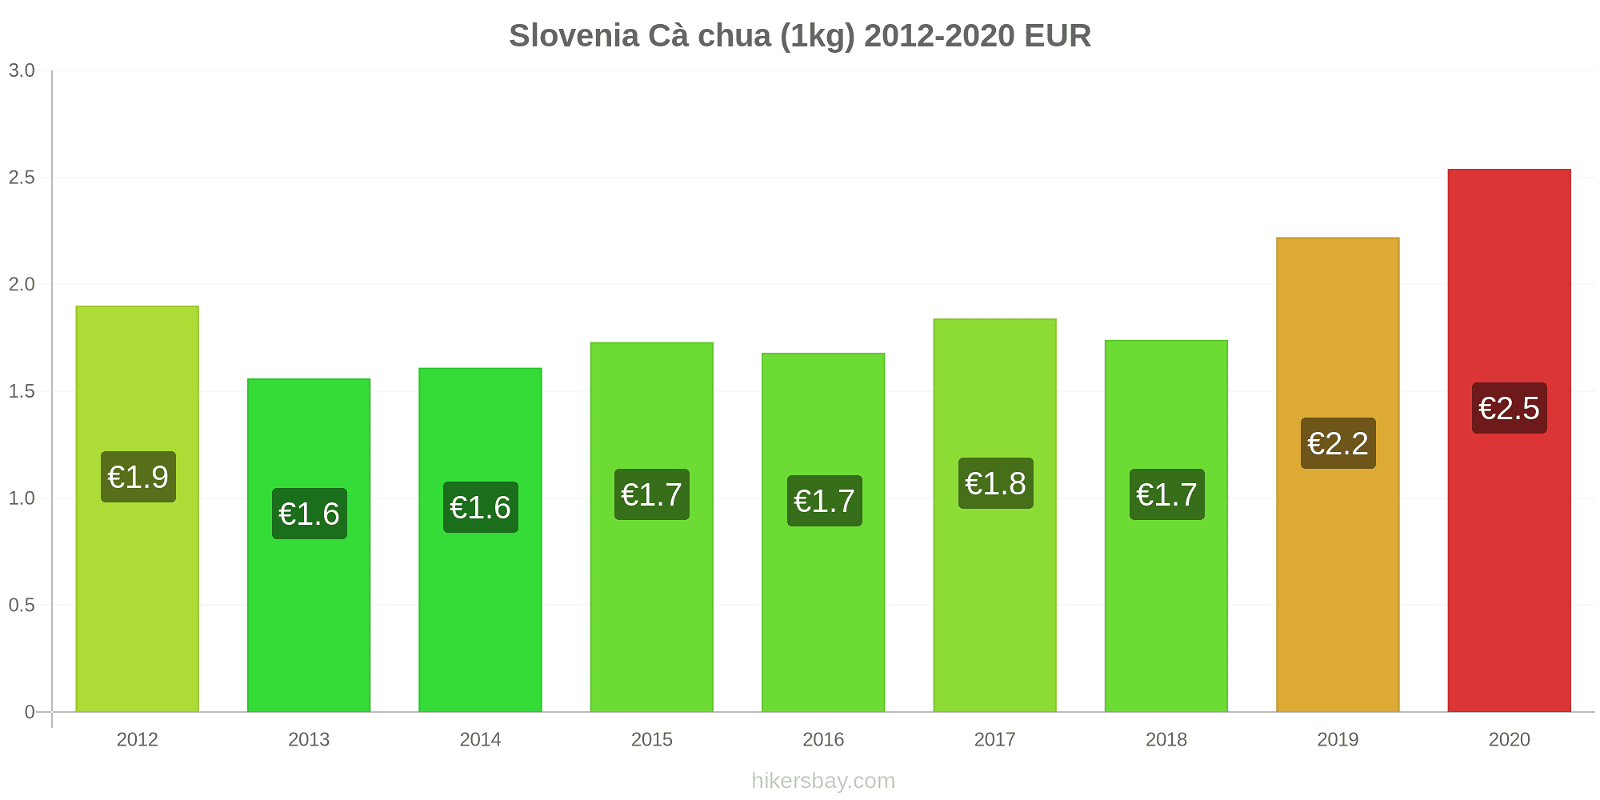 Slovenia thay đổi giá Cà chua (1kg) hikersbay.com